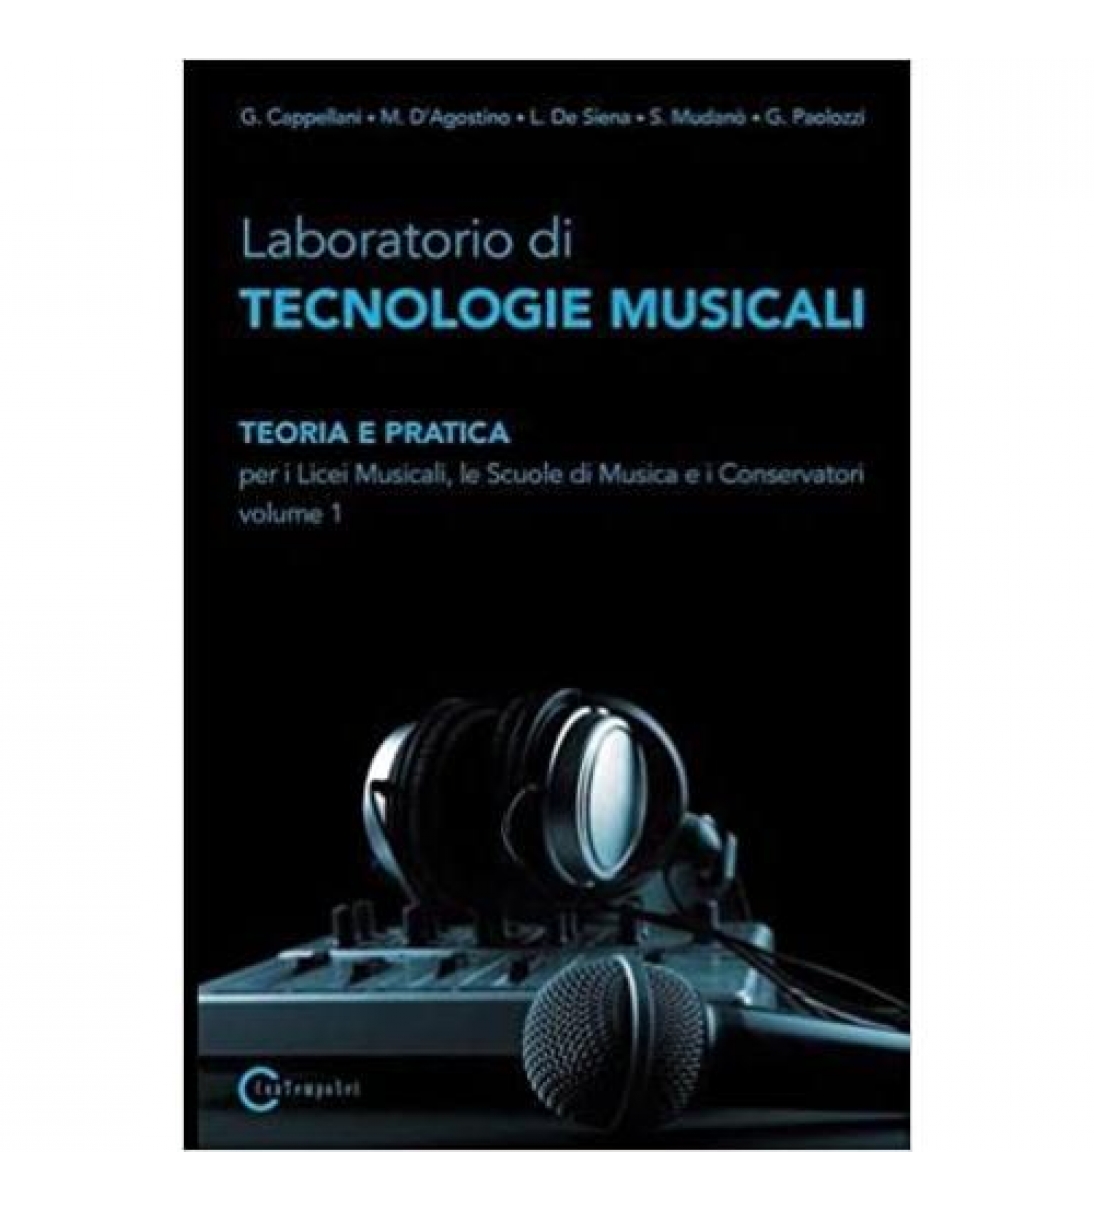  Laboratorio di tecnologie musicali vol. 1 Ed. Contemponet